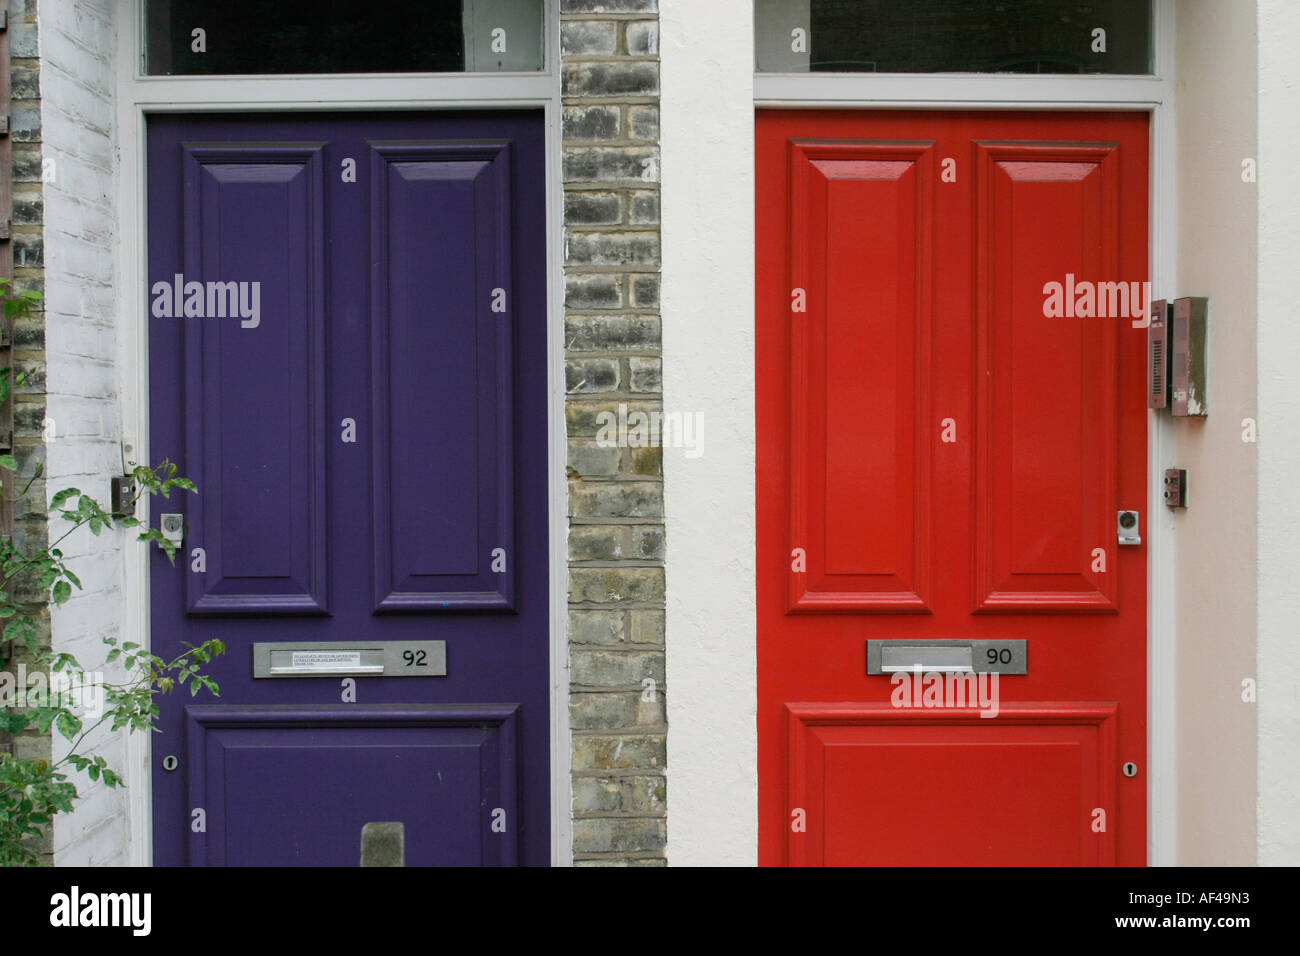 Deux portes, une bleue, une rouge. Parc de logements typiques de Londres Finsbury Park Banque D'Images